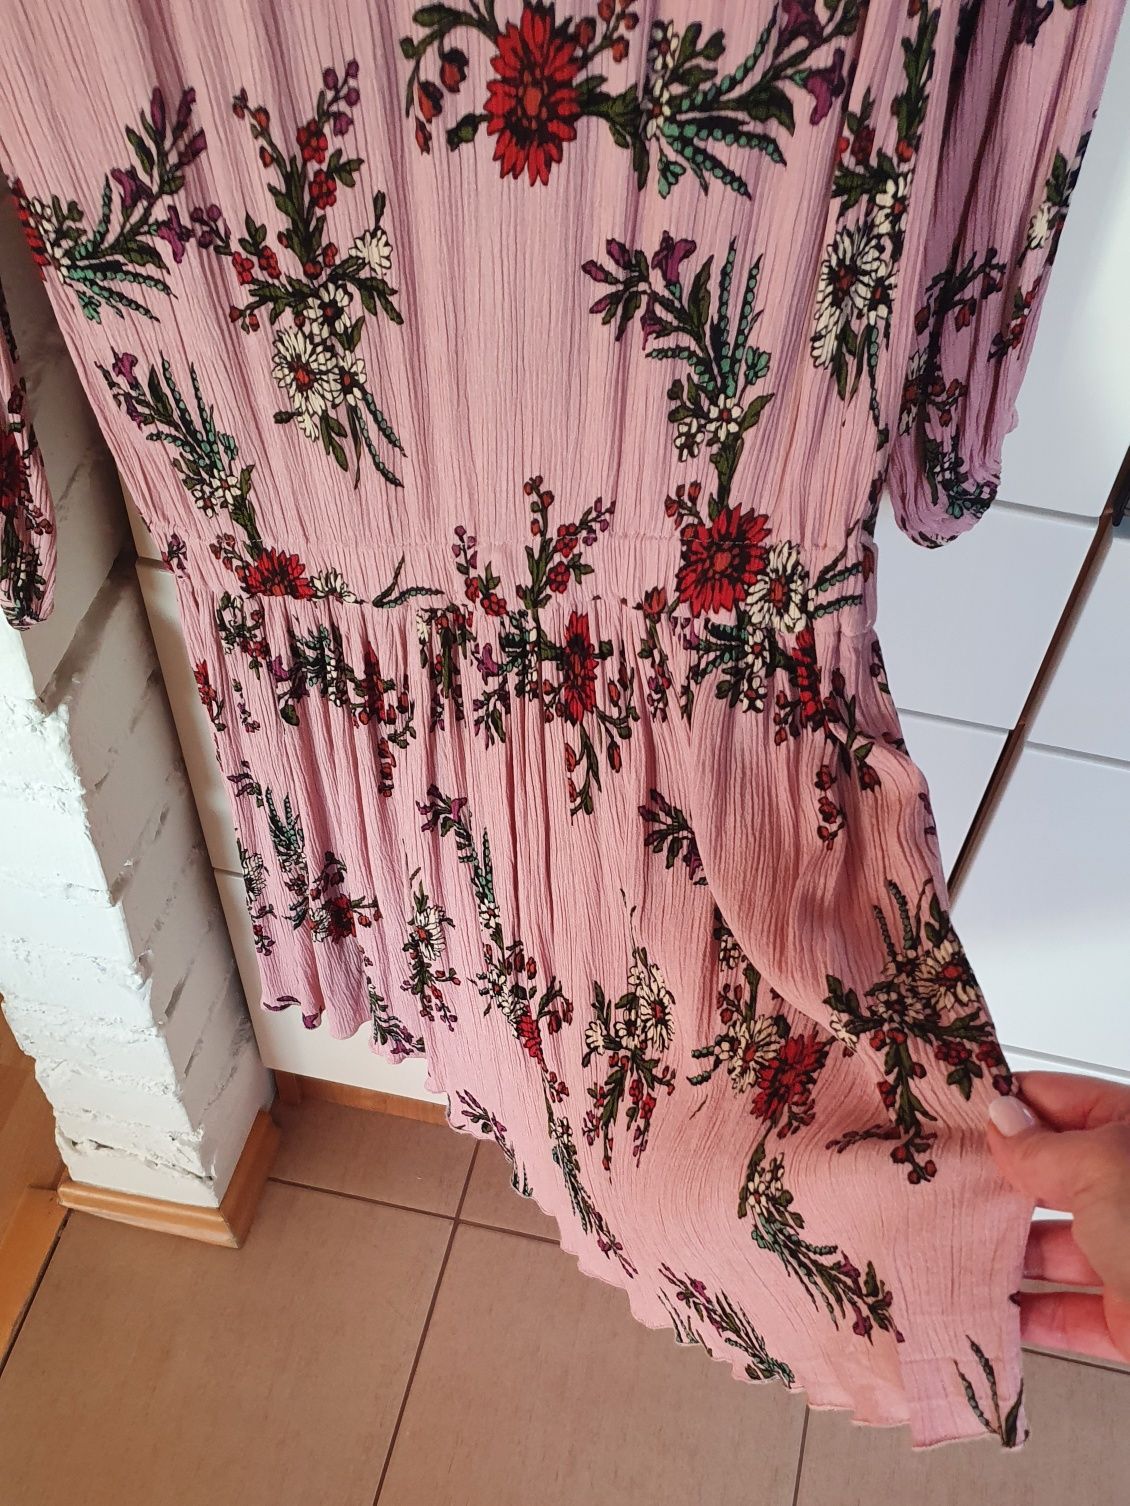 sukienka wiosenna/letnia - pudrowy róż z modnym, roślinnym printem